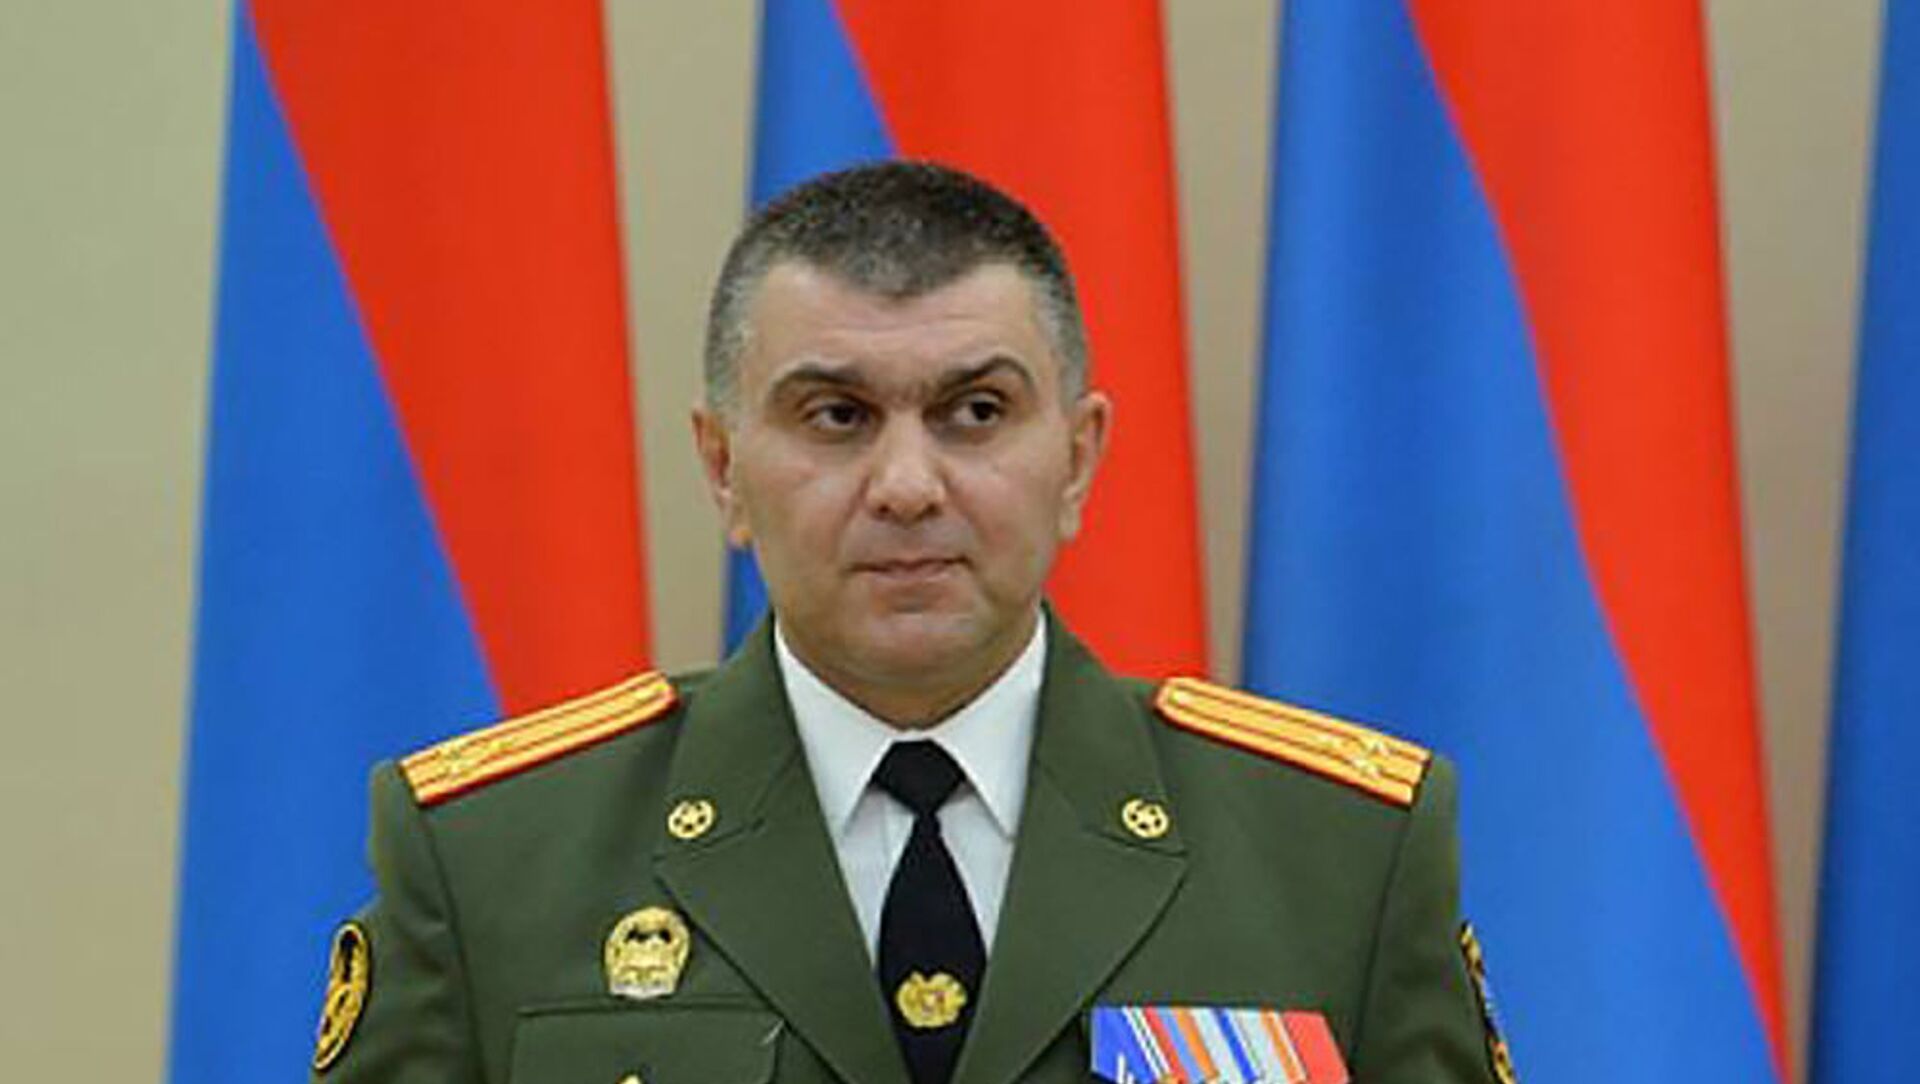 Генпрокуратура обжаловала решение суда об отказе арестовать генерал-майора Хачатурова